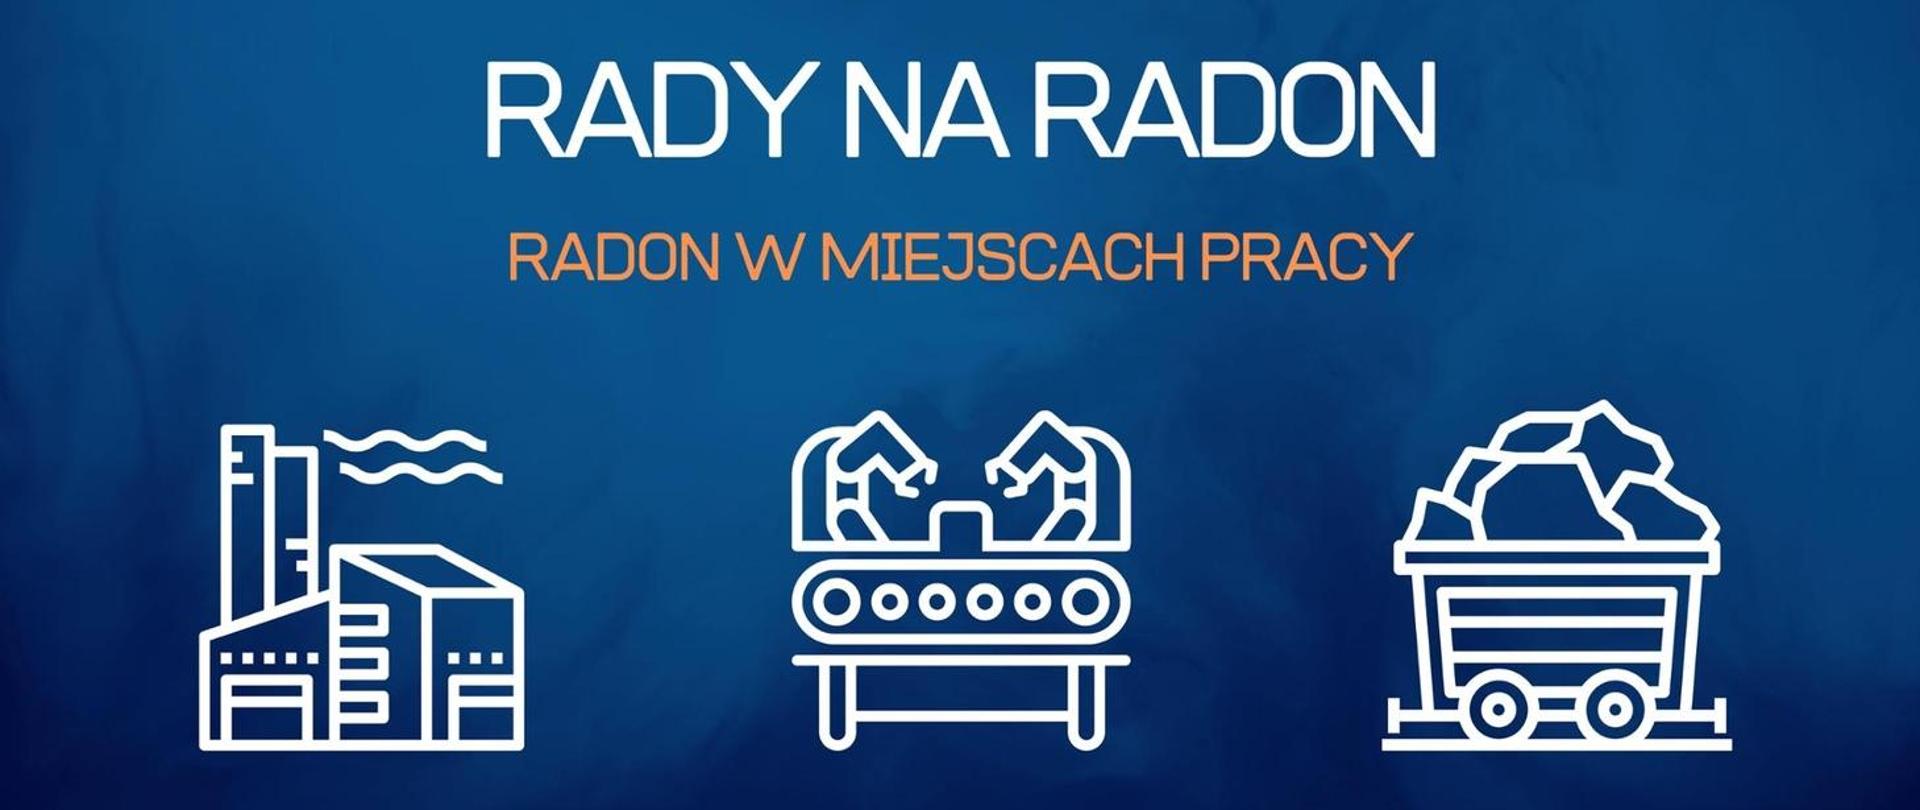 Obraz przedstawia napis na niebieskim tle: "RADY NA RADON. Radon w miejscach pracy". Poniżej trzy grafiki: jedna przedstawia fabrykę, druga maszynę produkcyjną, a trzecia wagonik z jakimś materiałem, surowcem.